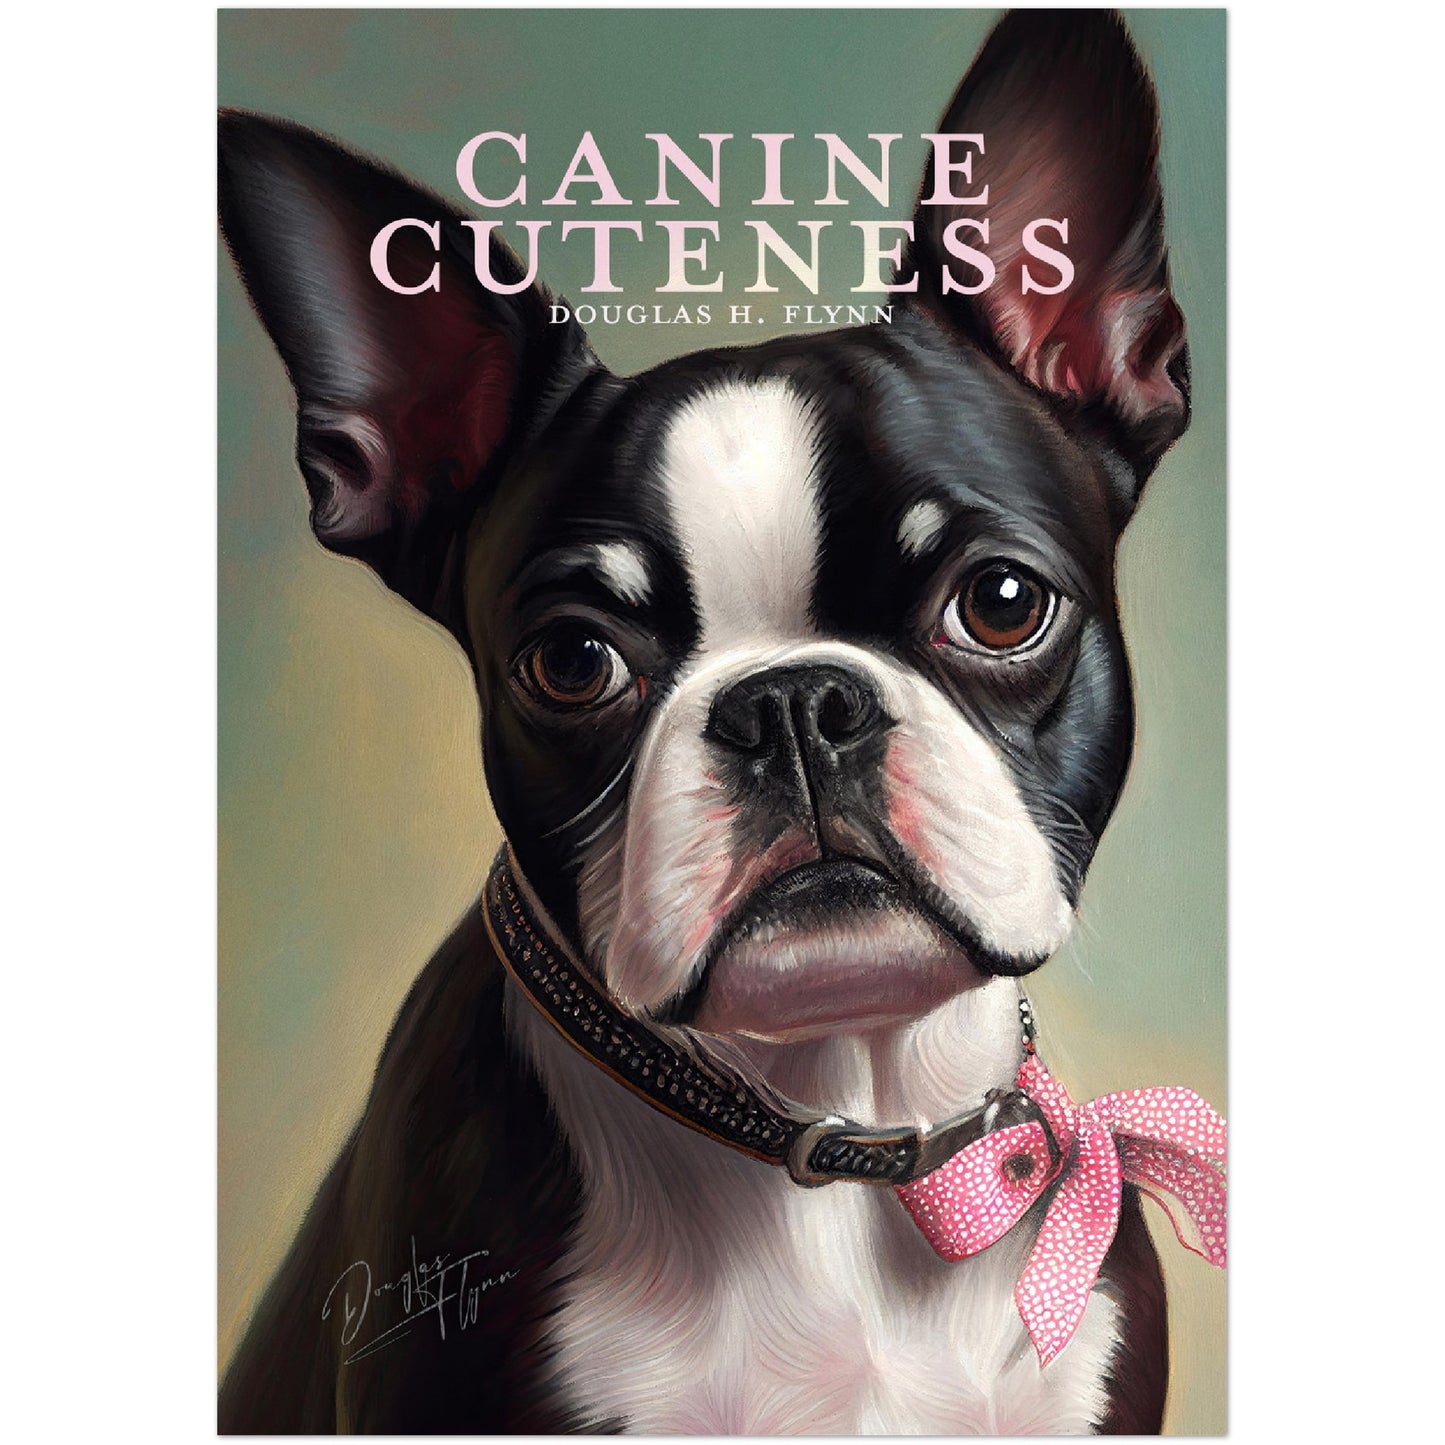 »Canine Cuteness« merch poster